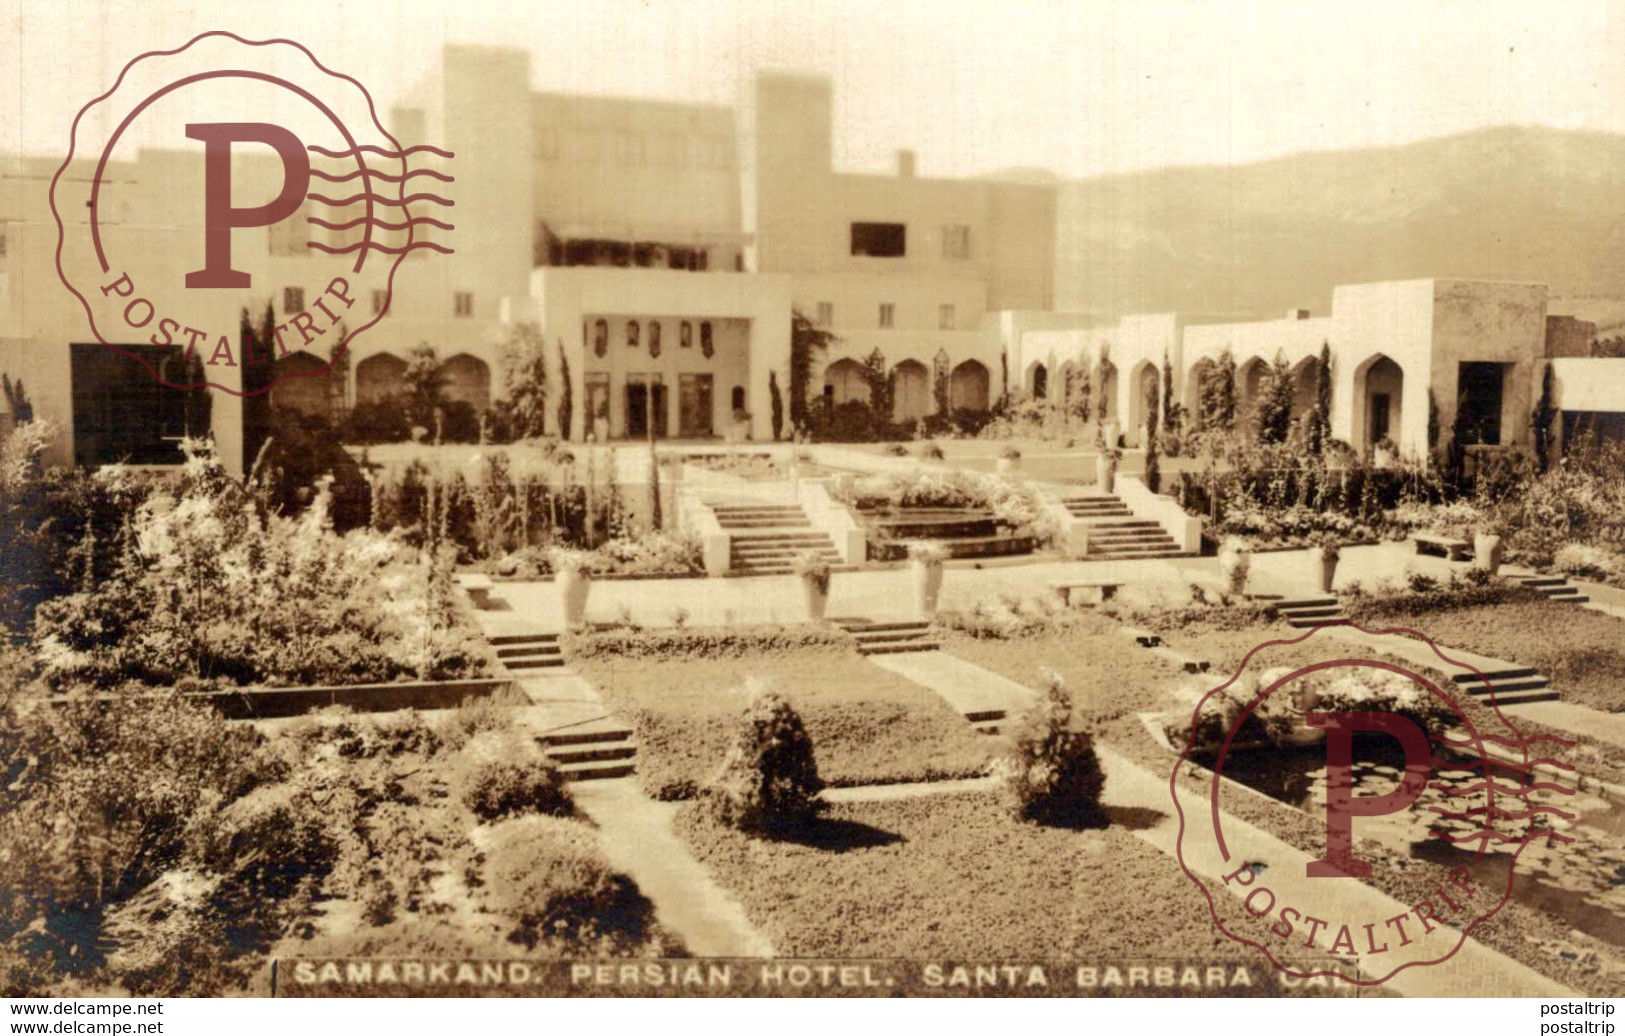 REAL PHOTO POSTCARD  Santa Barbara California~Samarkand Persian Hotel - Santa Barbara